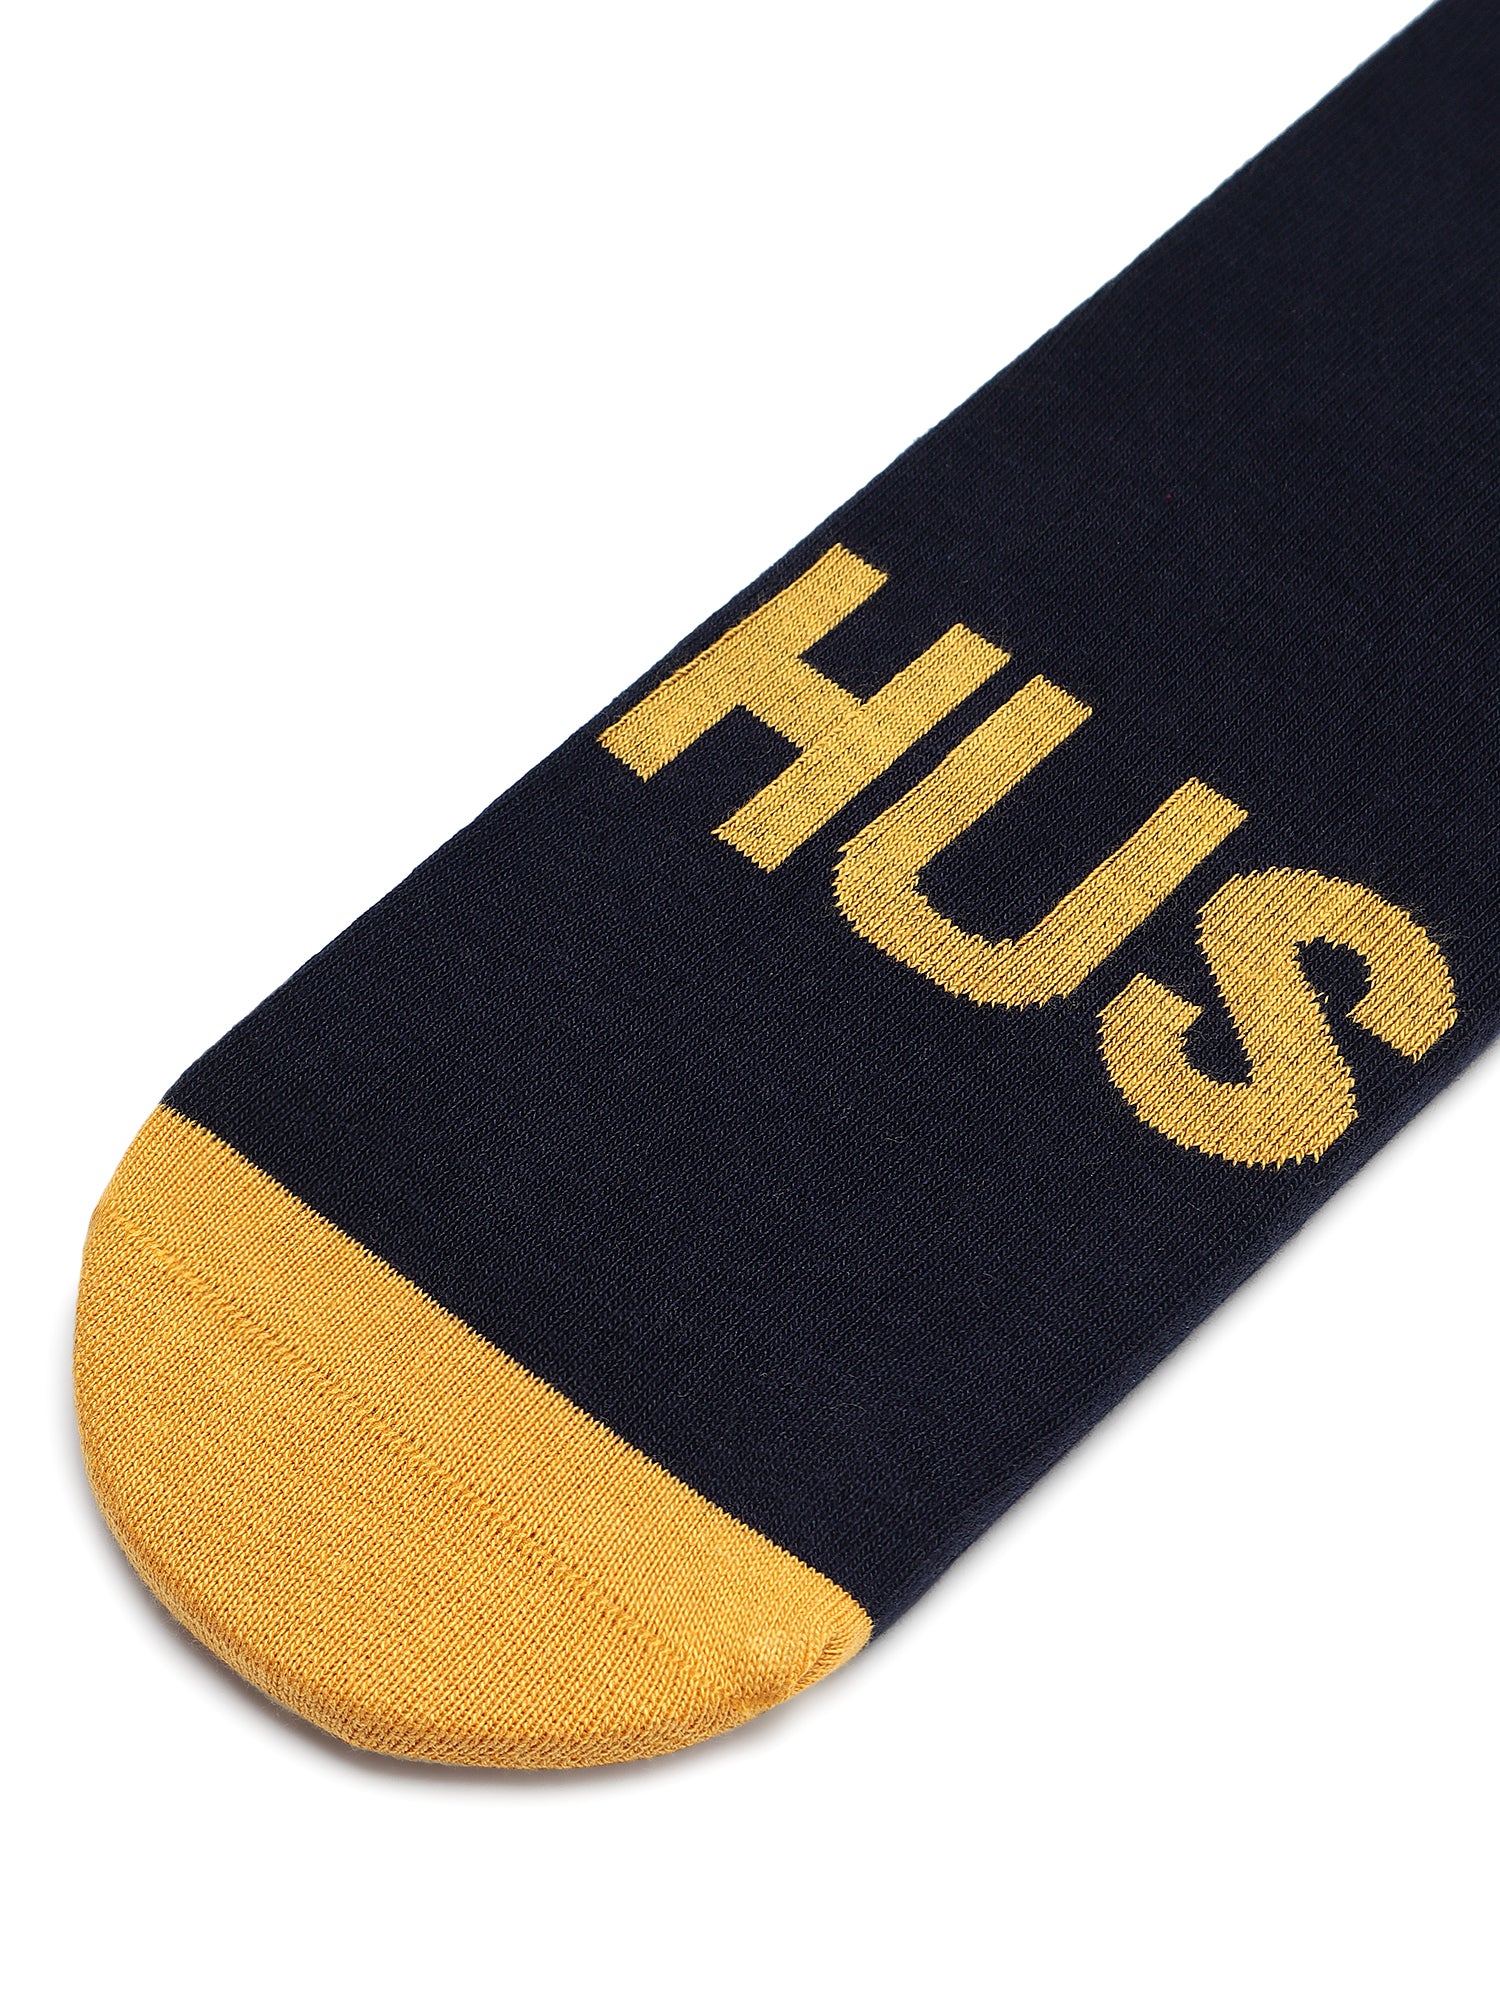 Hustle Navy Blue Ankle Socks 1 Pair